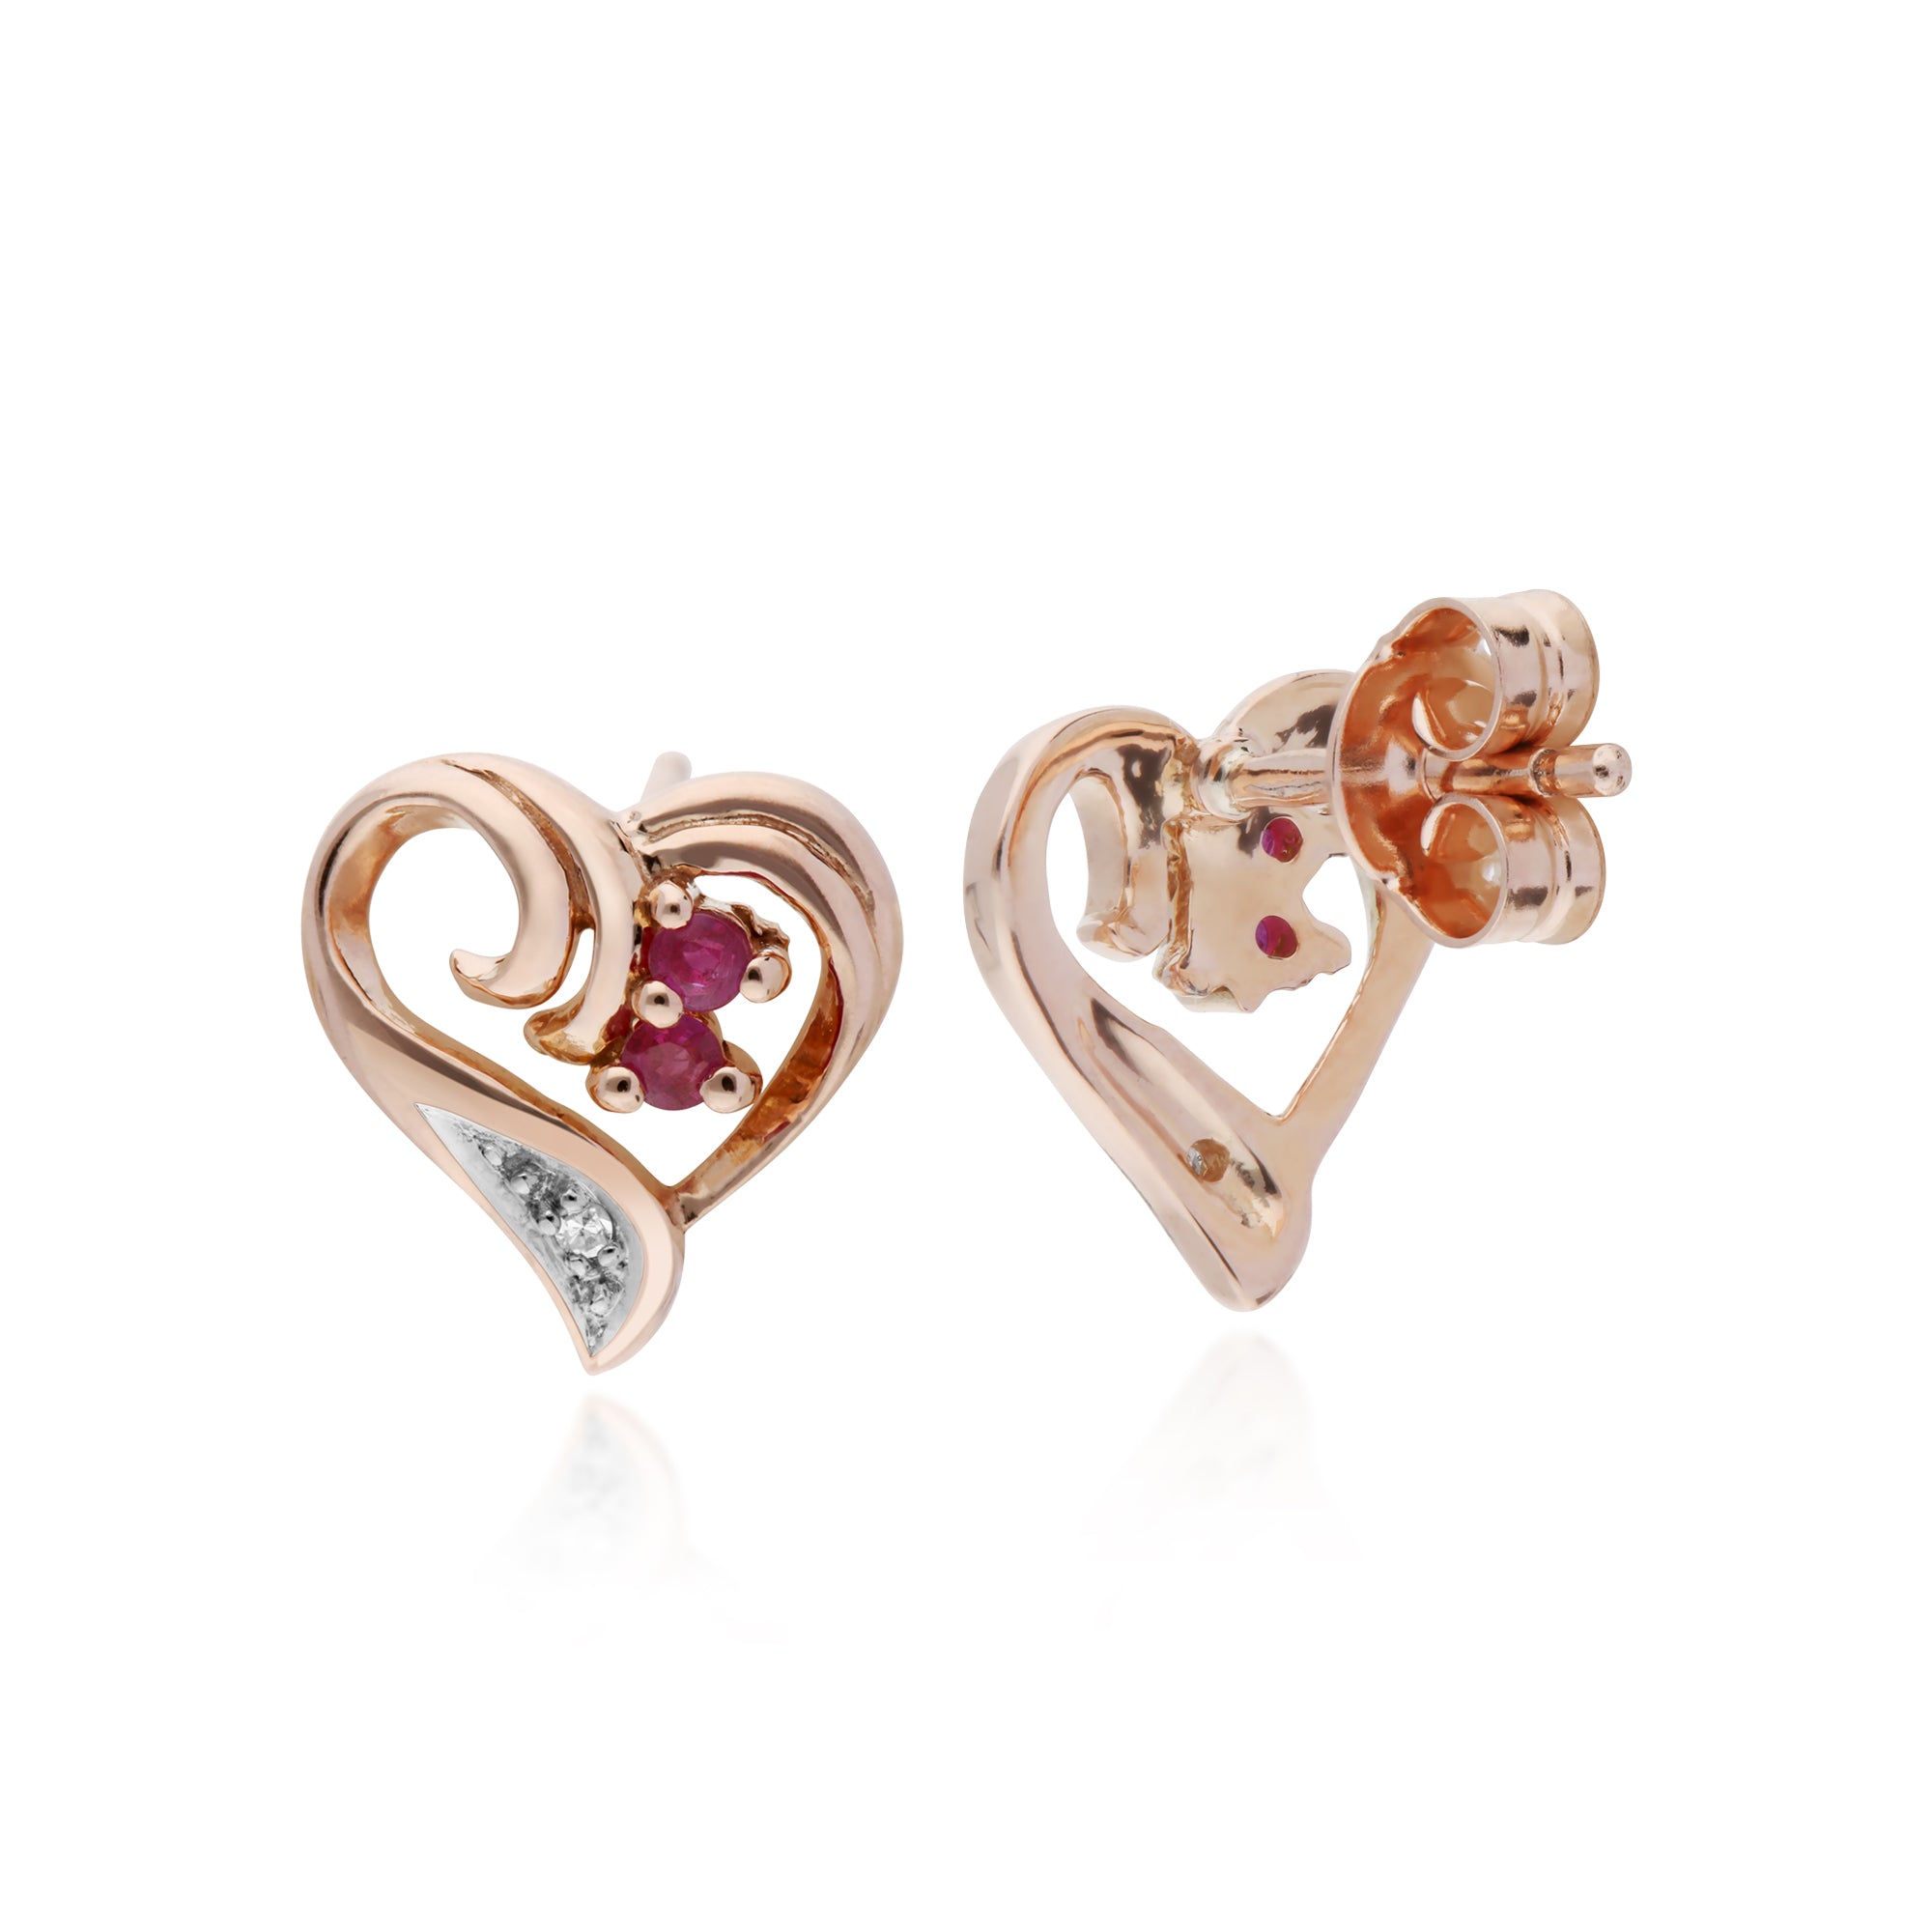 Classic Round Ruby & Diamond Fancy Swirl Heart Stud Earrings in 9ct Rose Gold - Gemondo